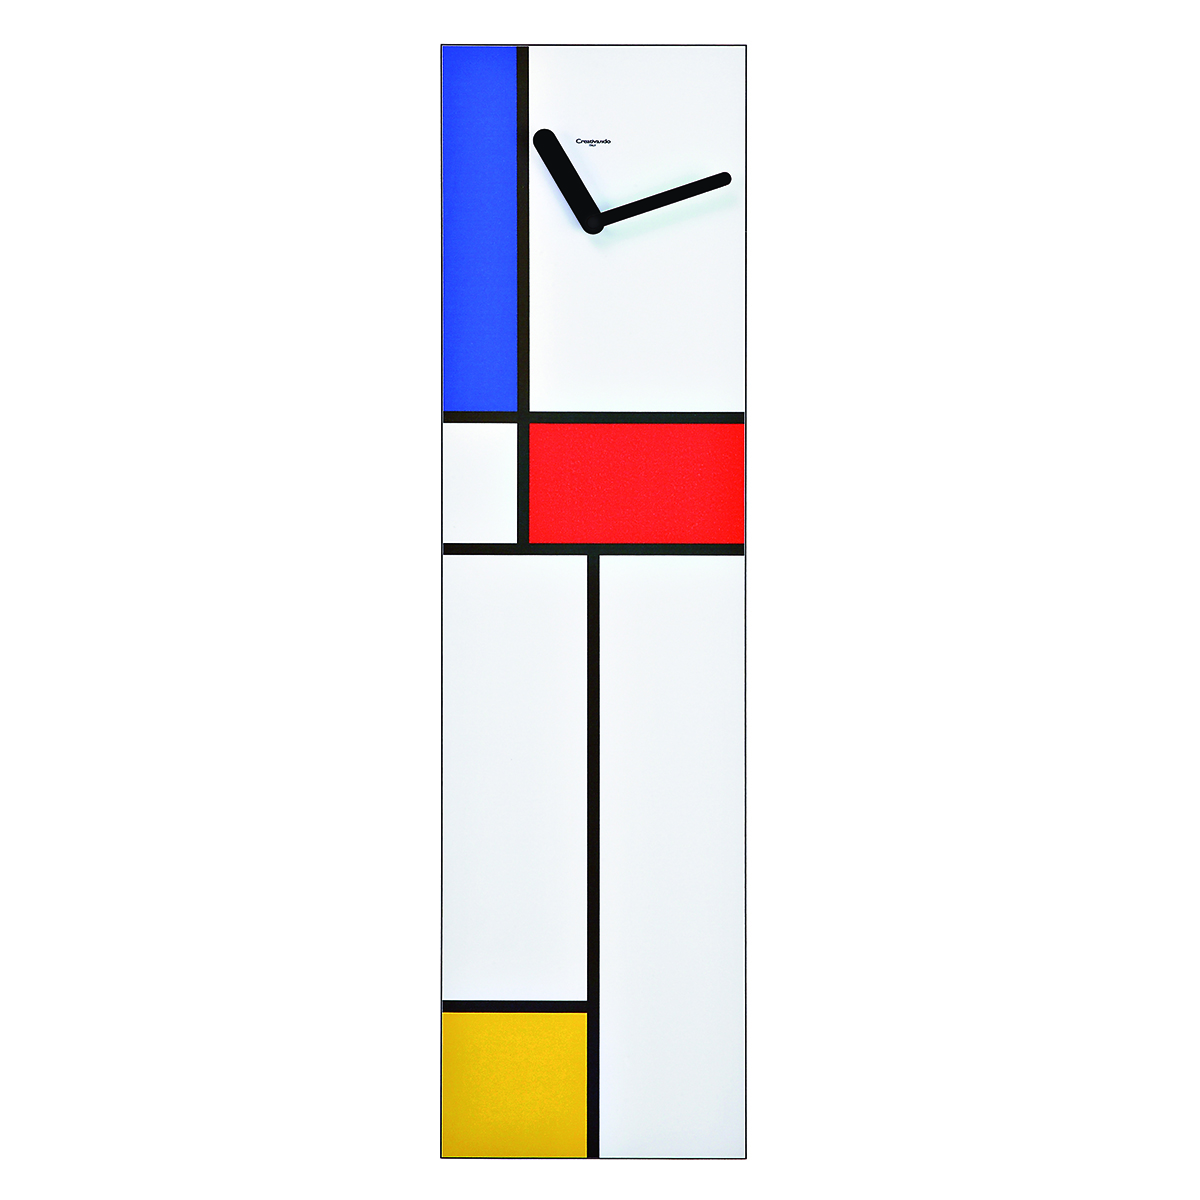 orologio da parete, verticale, fondo bianco, decorato secondo lo stile e i colori Mondrian o Bauhaus.